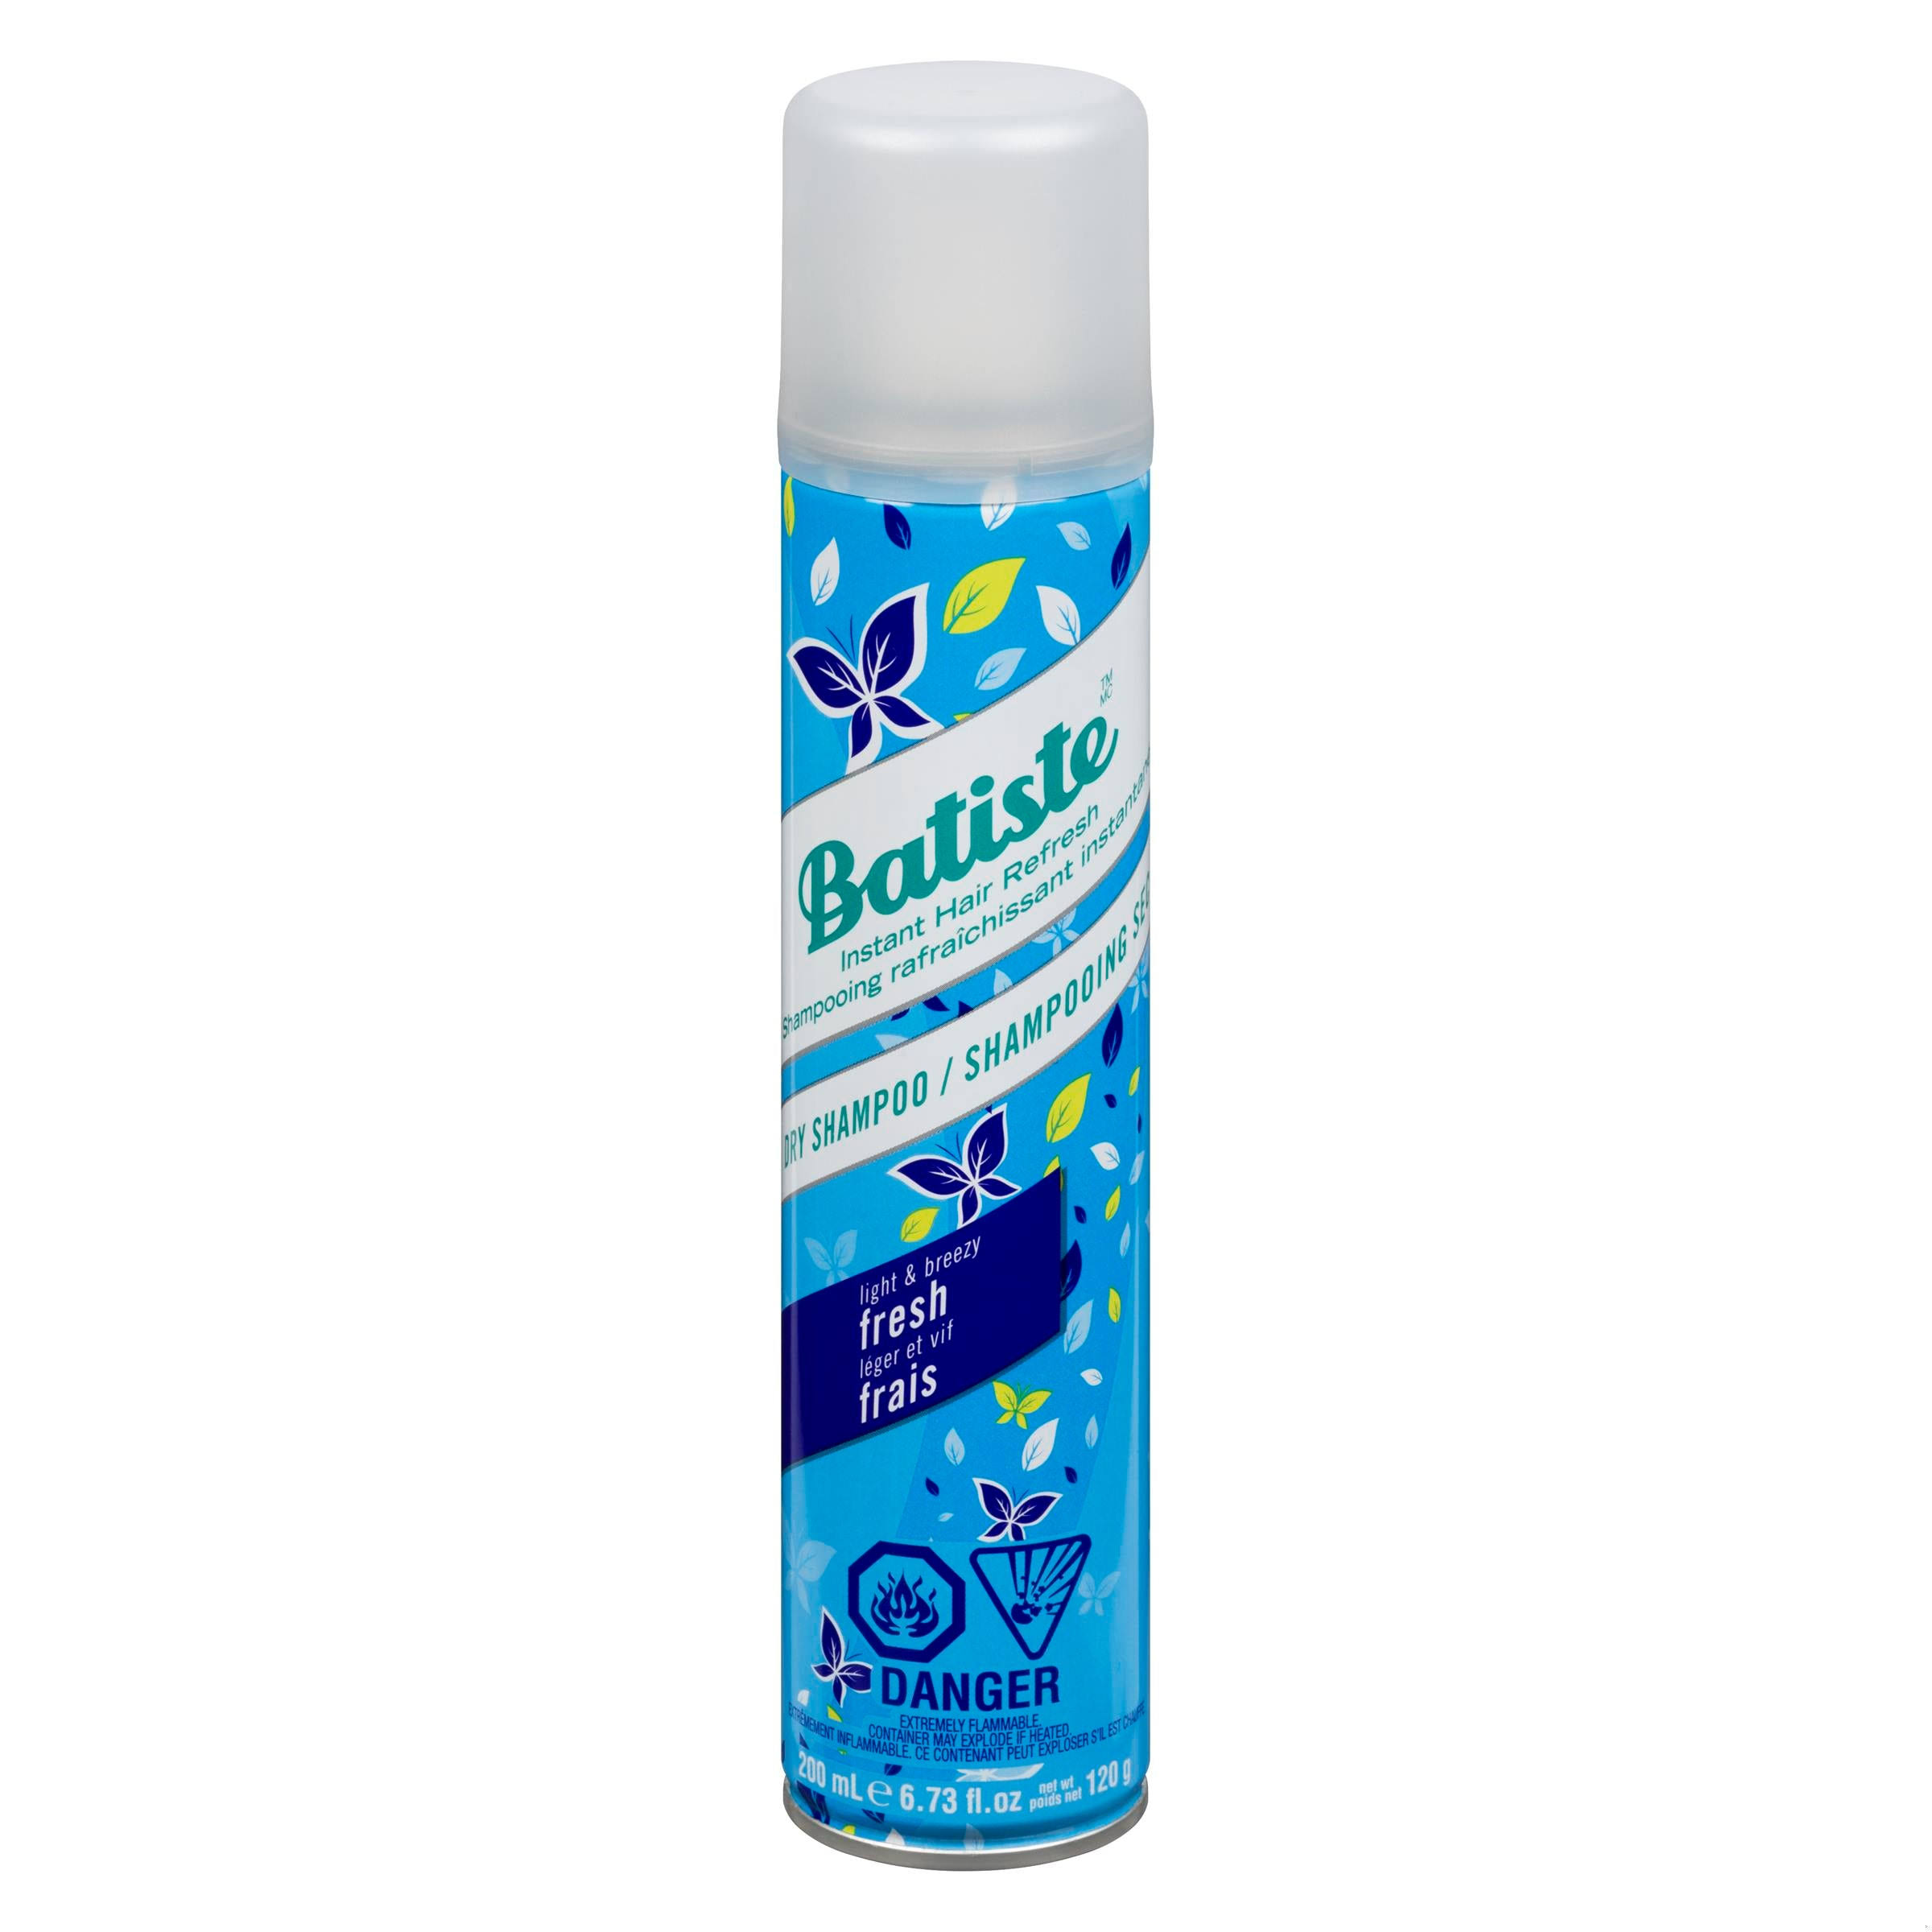 Batiste Dry Shampoo - Light & Breezy Fresh, 200ml